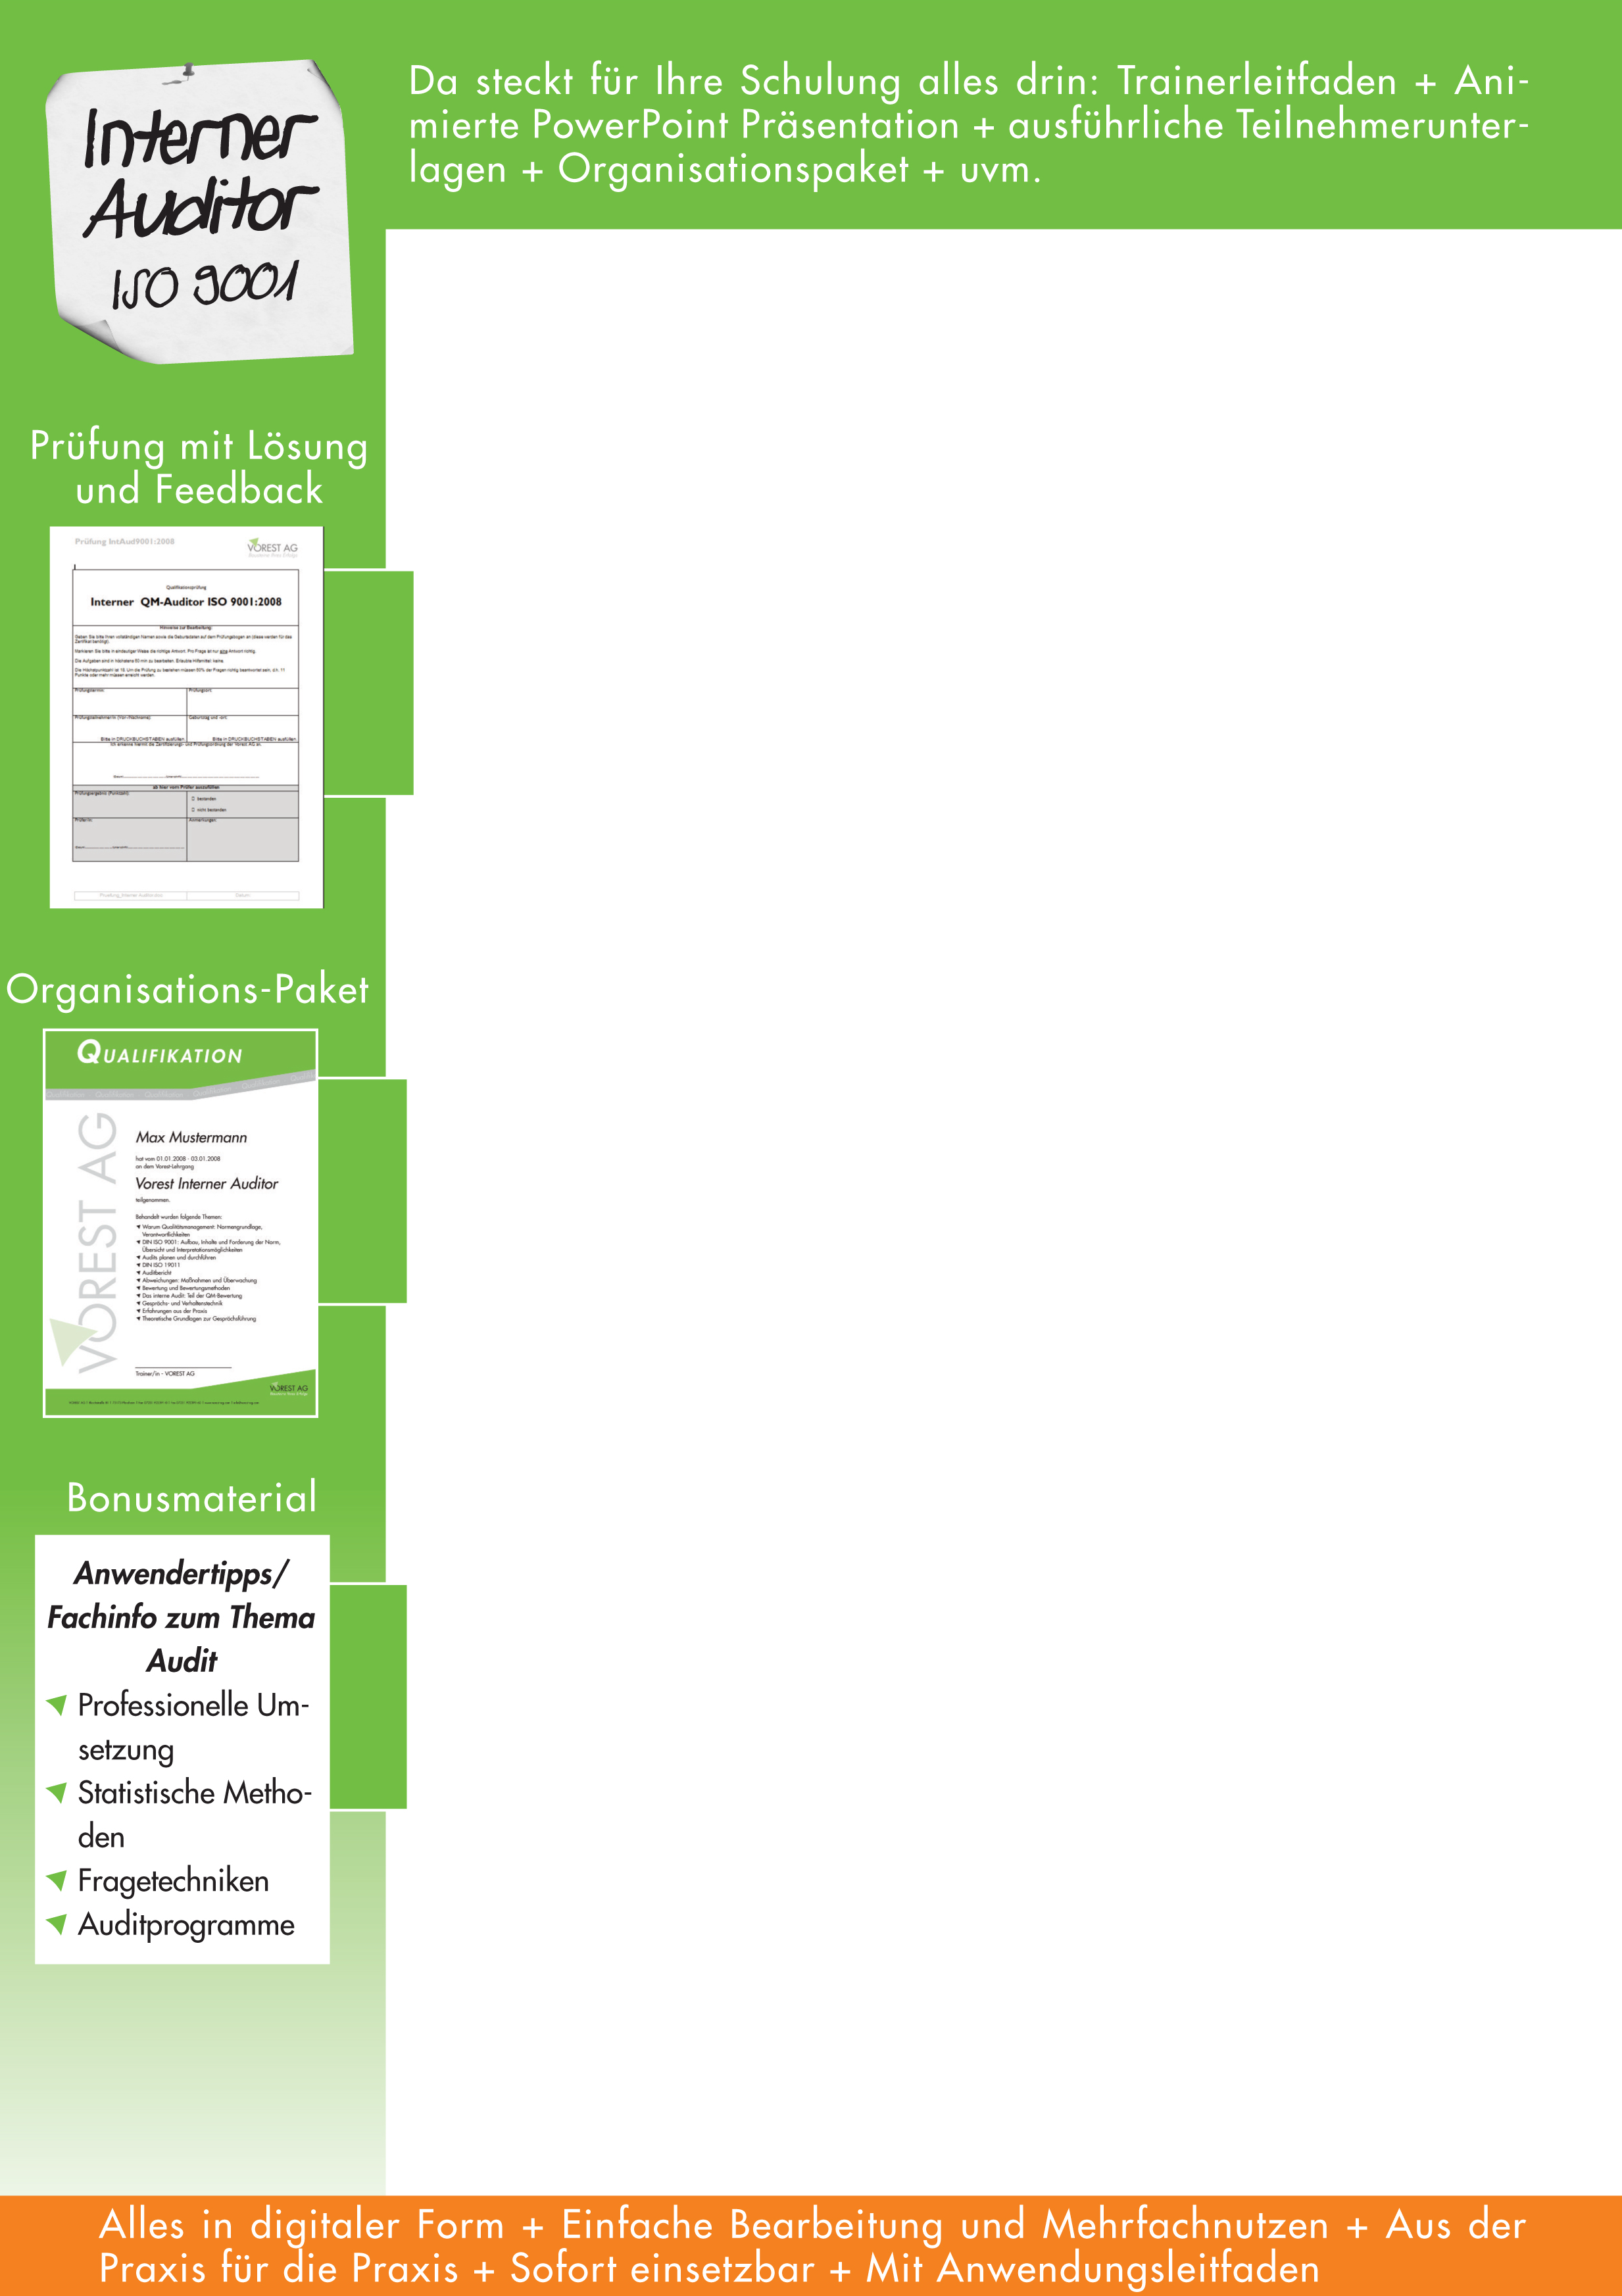 Interner Auditor ISO 9001:2008 Teil 4 Bewertung und Berichterstattung, Bewertungsfehler - Präsentation Interner Auditor - Bewertung, Bericht, Bewertungsfehler - Bewertung des Audits Auditbericht